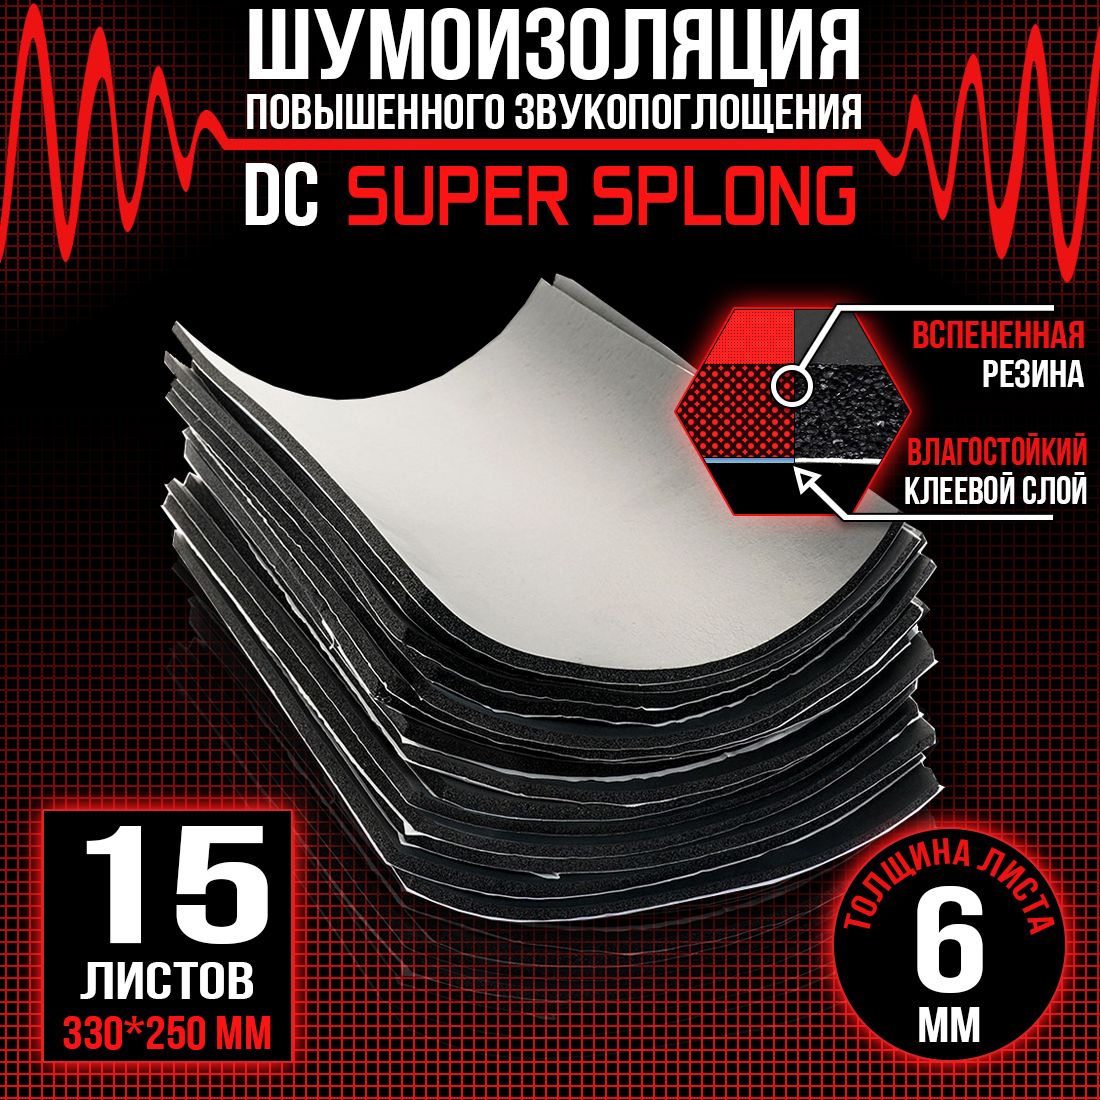 15 листов - Звукоизоляция с повышенным звукопоглощением DreamCar Super Splong 6мм 33х25см - 15 листов